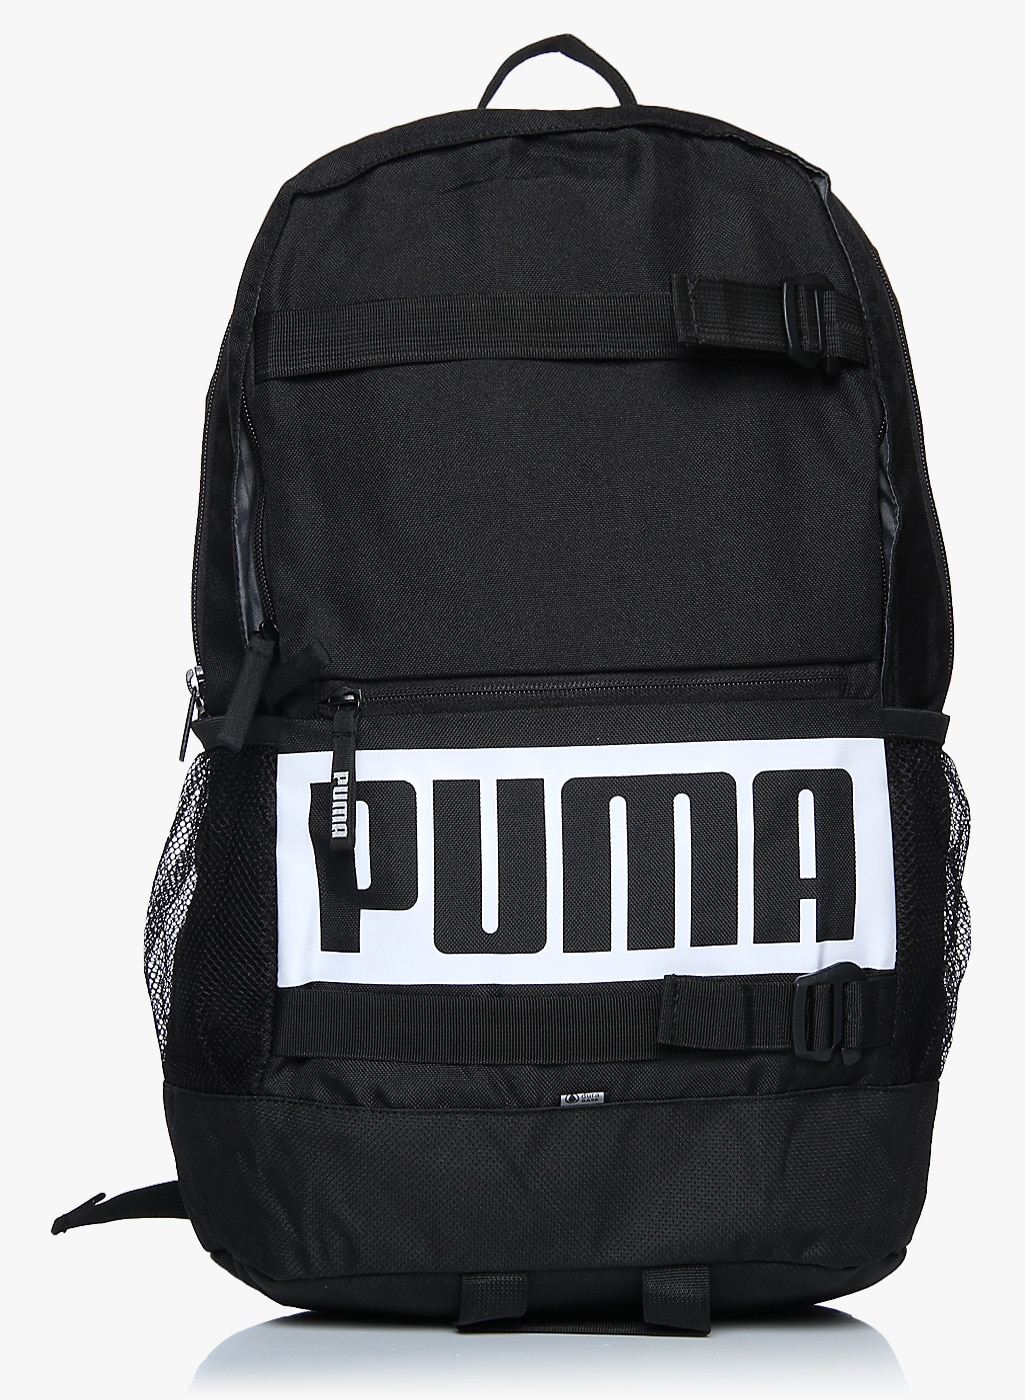 deck backpack puma